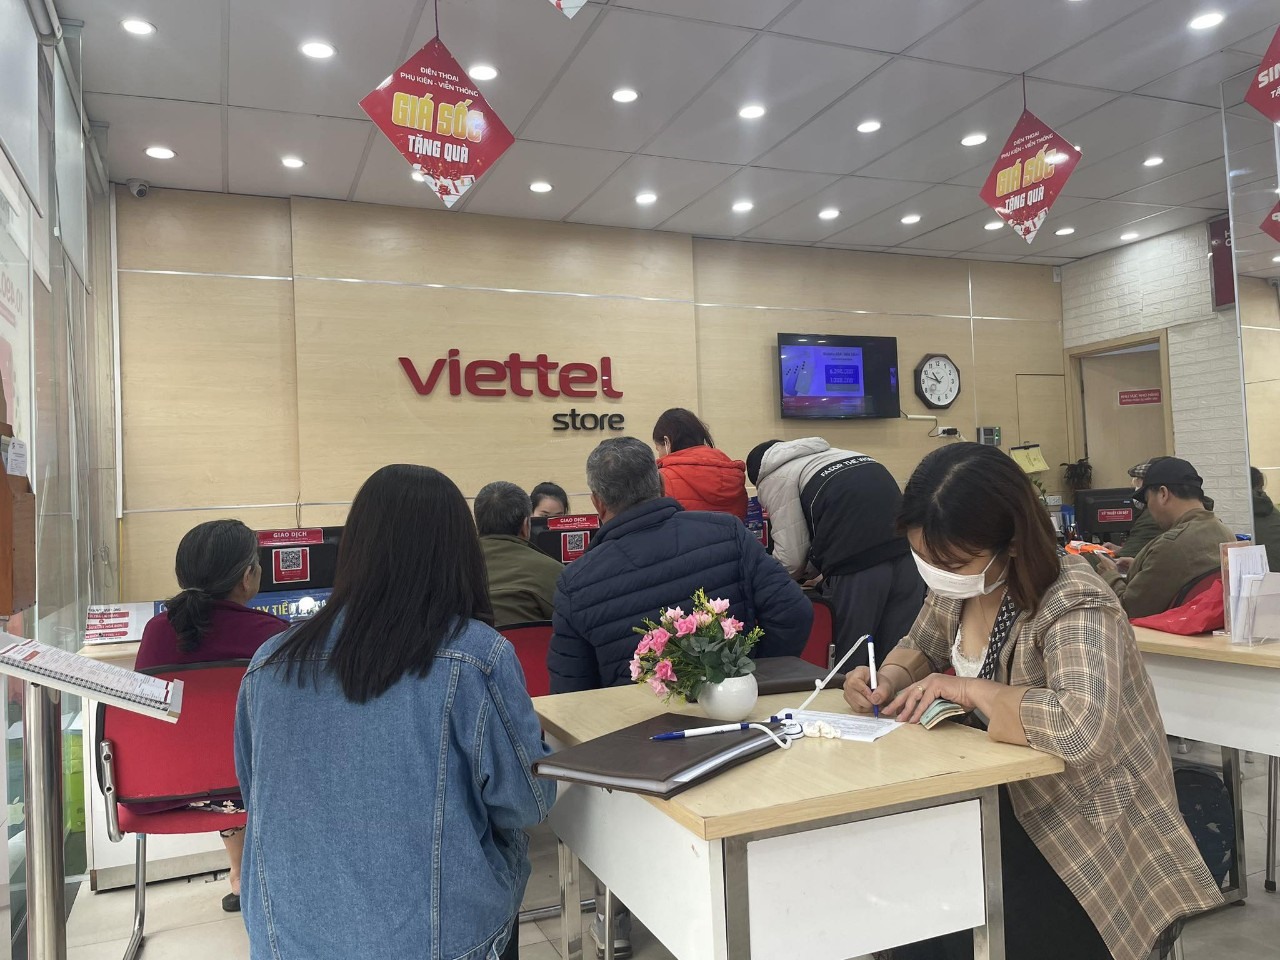 Điểm giao dịch Viettel ở phố Trương Định khá đông người. Ảnh: Hoa Lệ